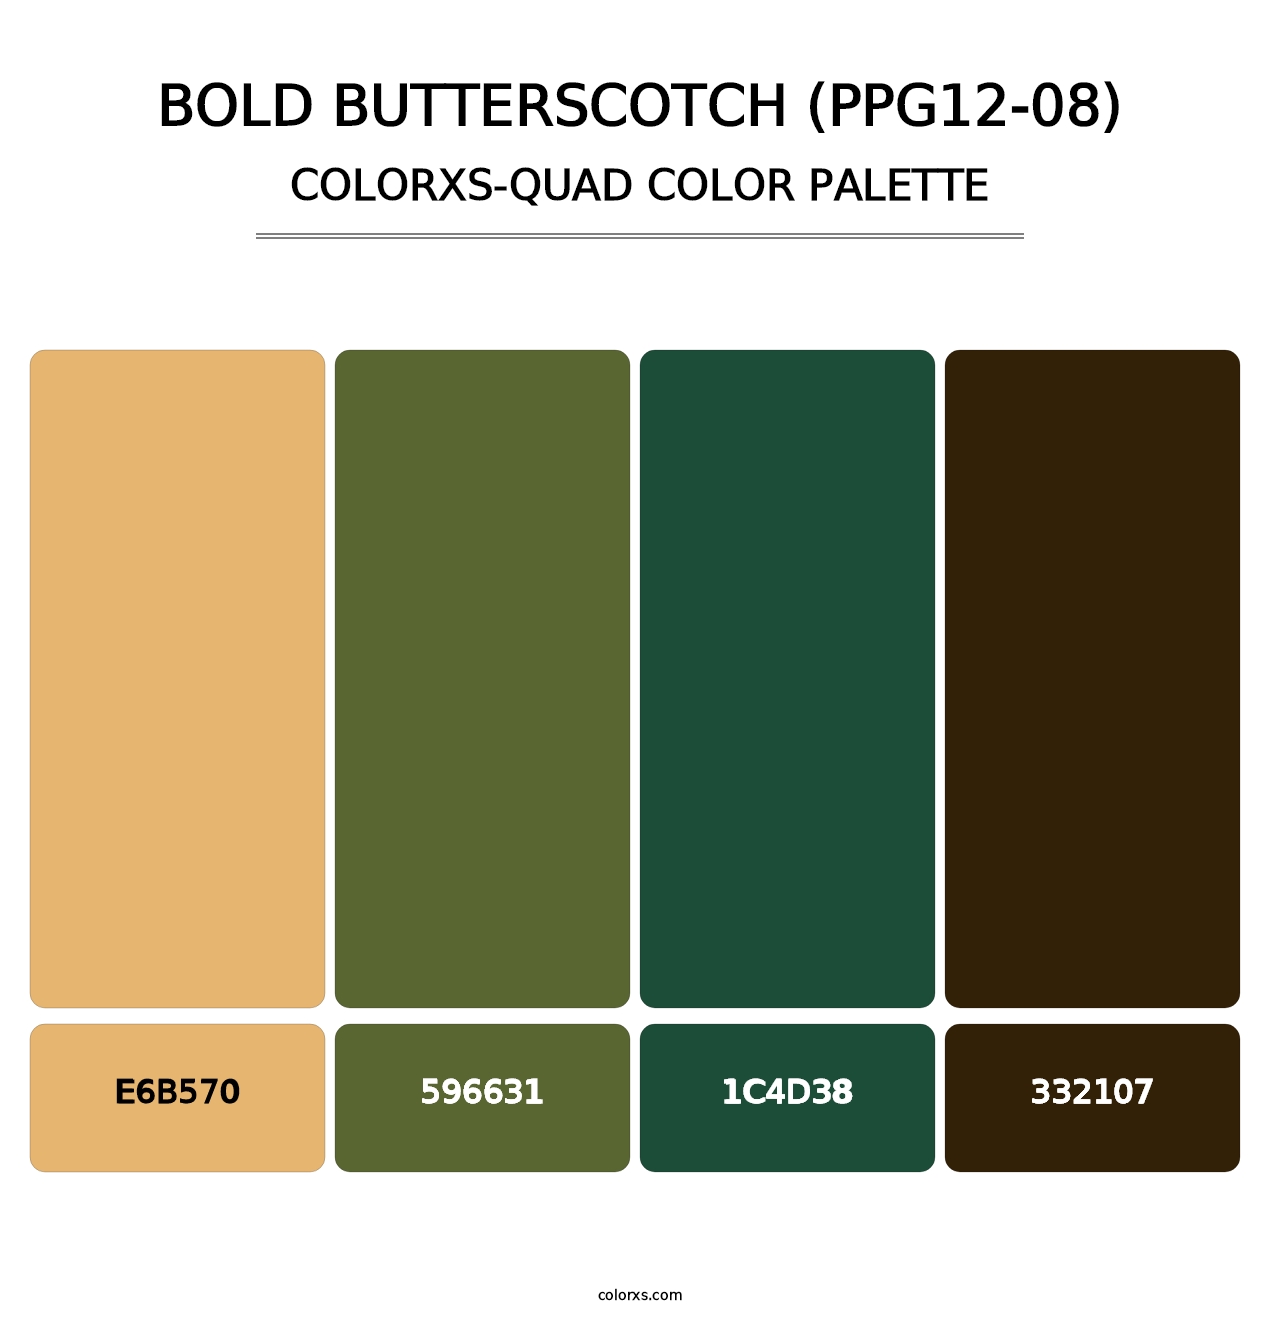 Bold Butterscotch (PPG12-08) - Colorxs Quad Palette